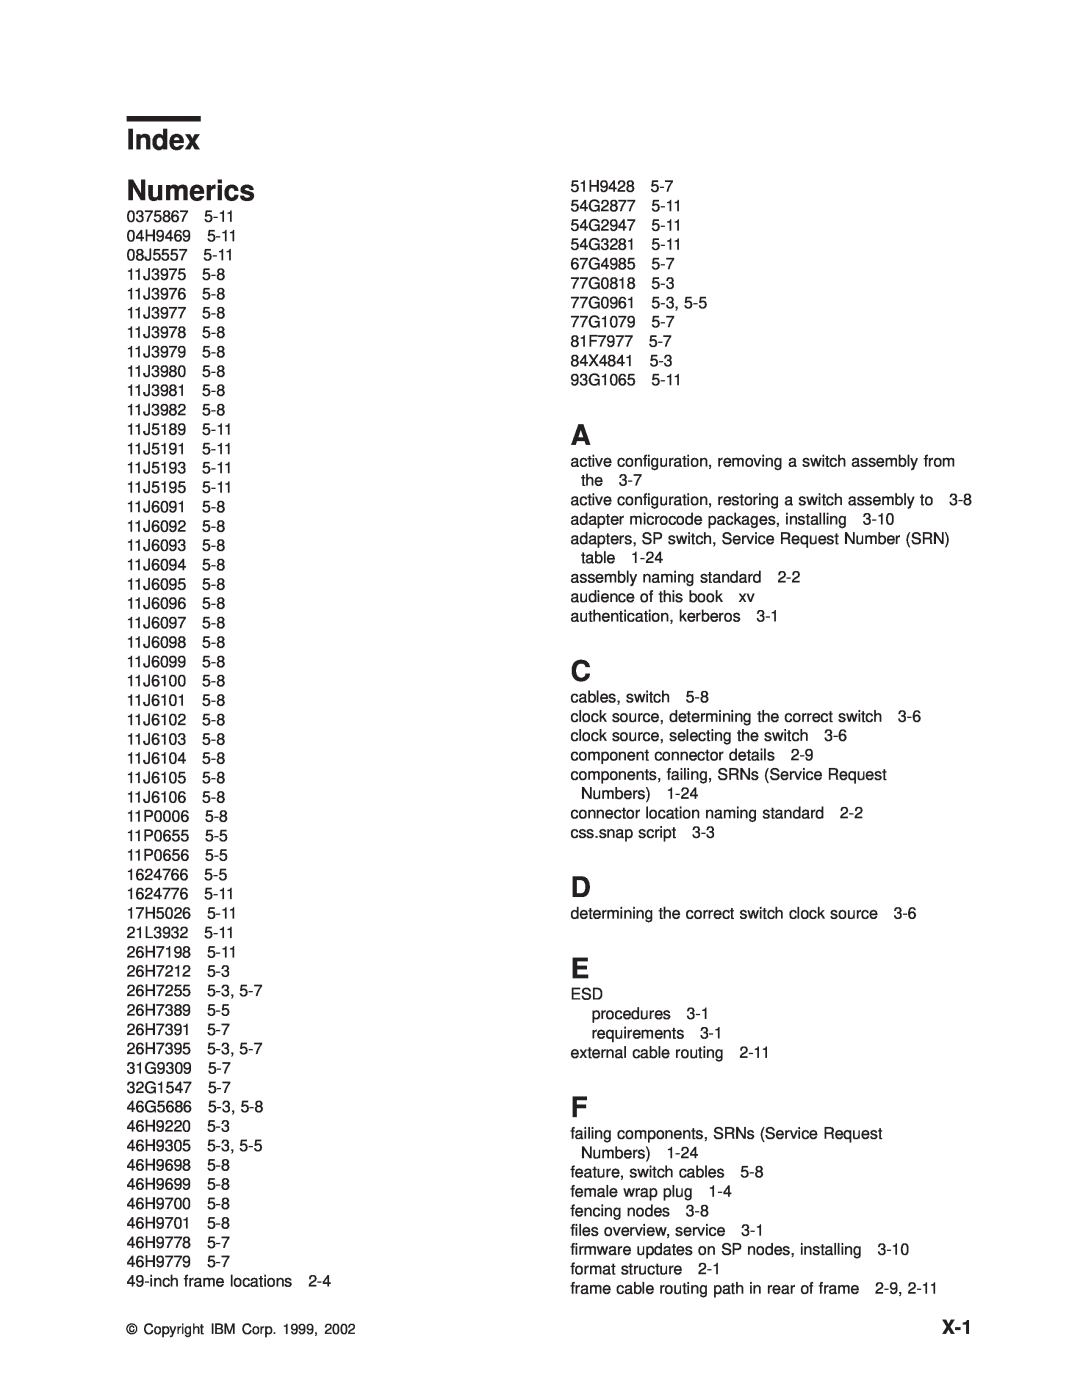 IBM RS/6000 SP manual Index Numerics 